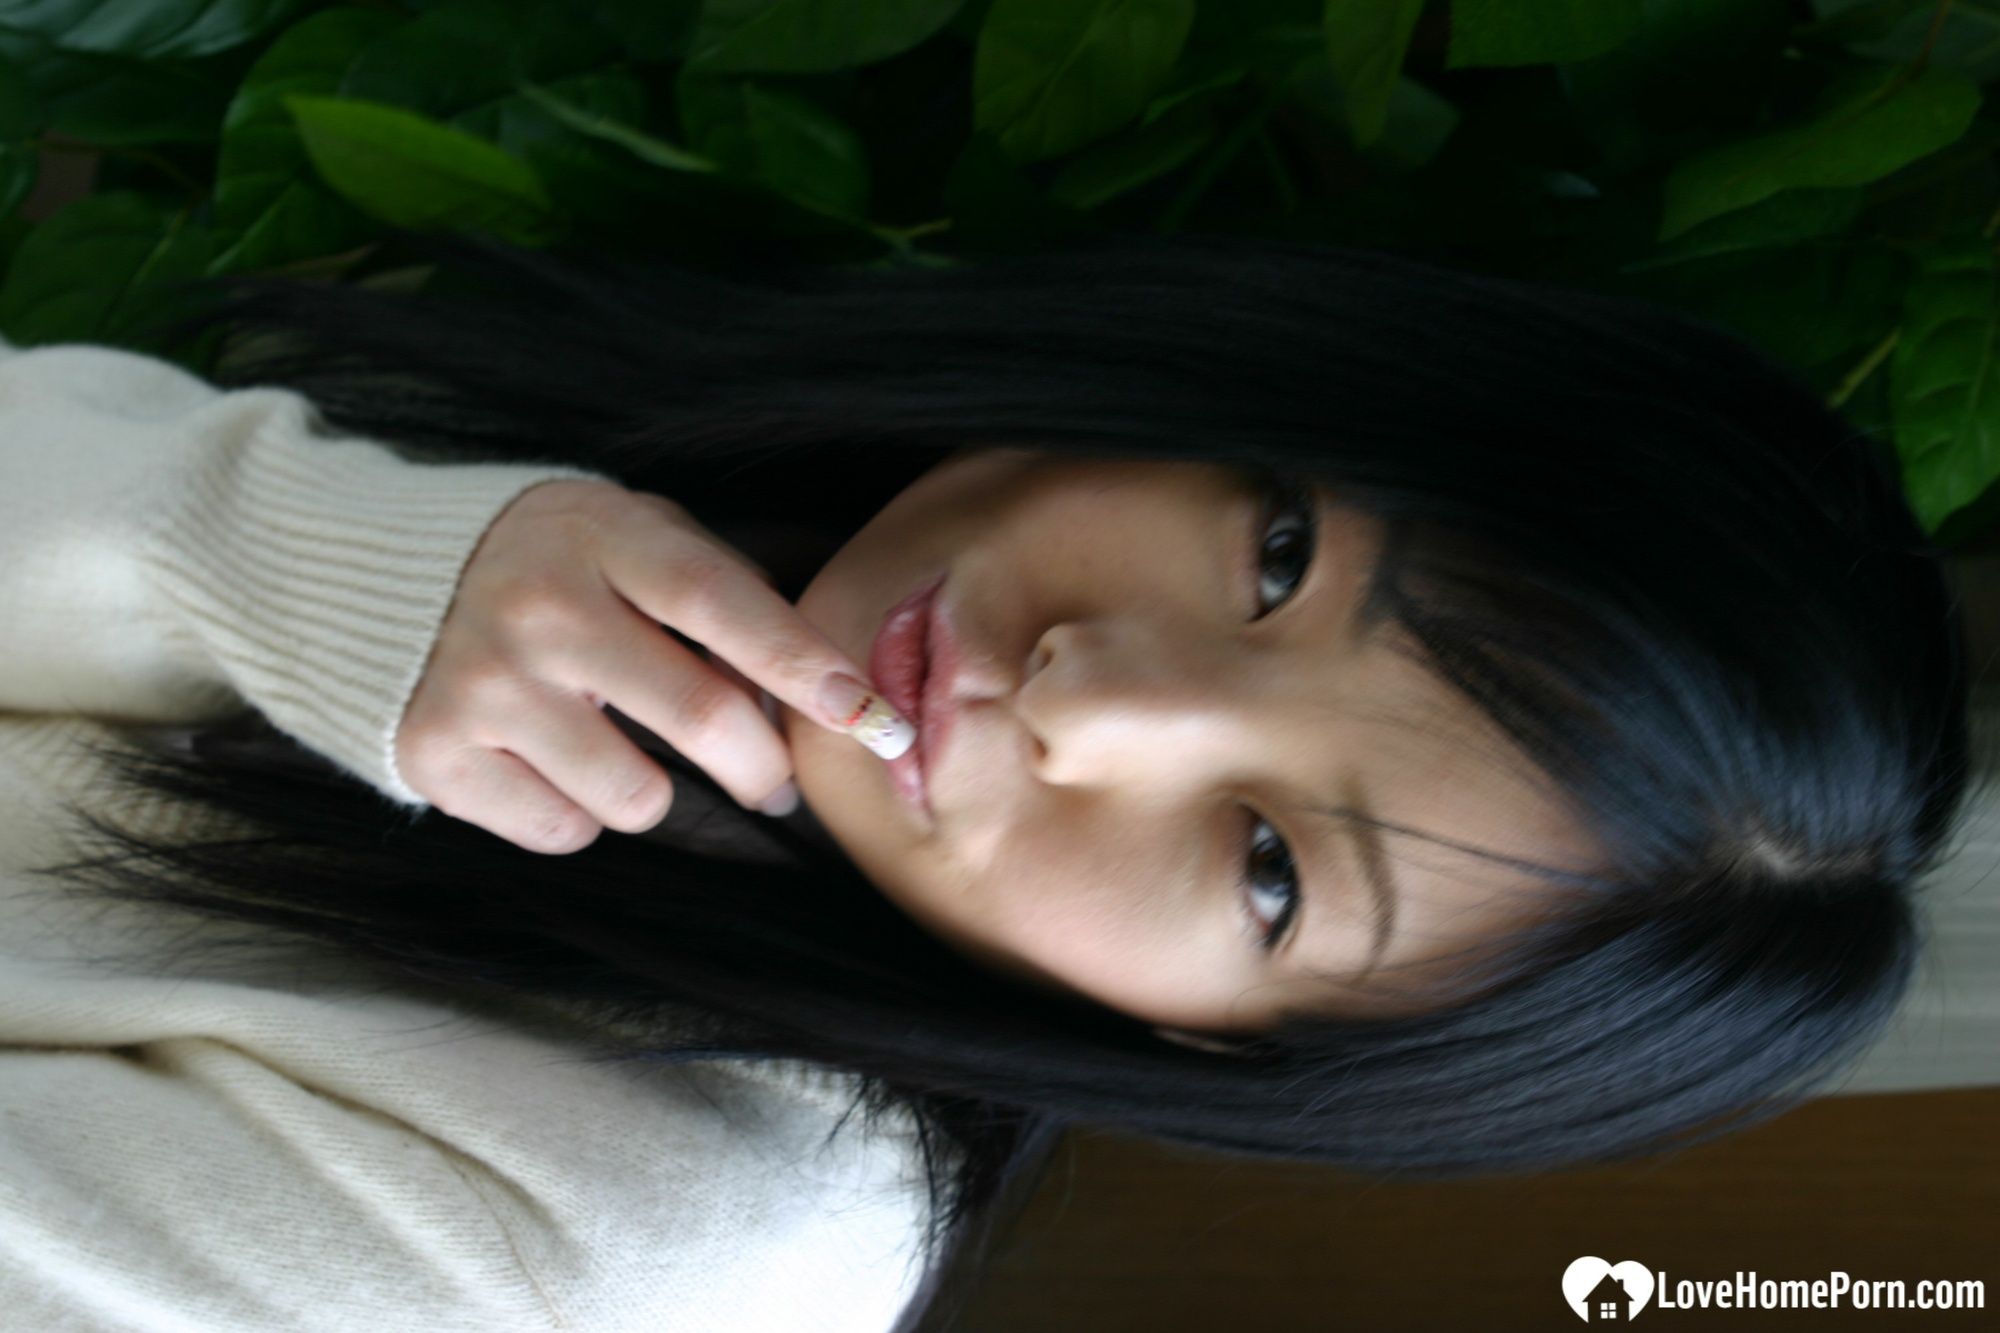 Asian schoolgirl looks for some online exposure #17